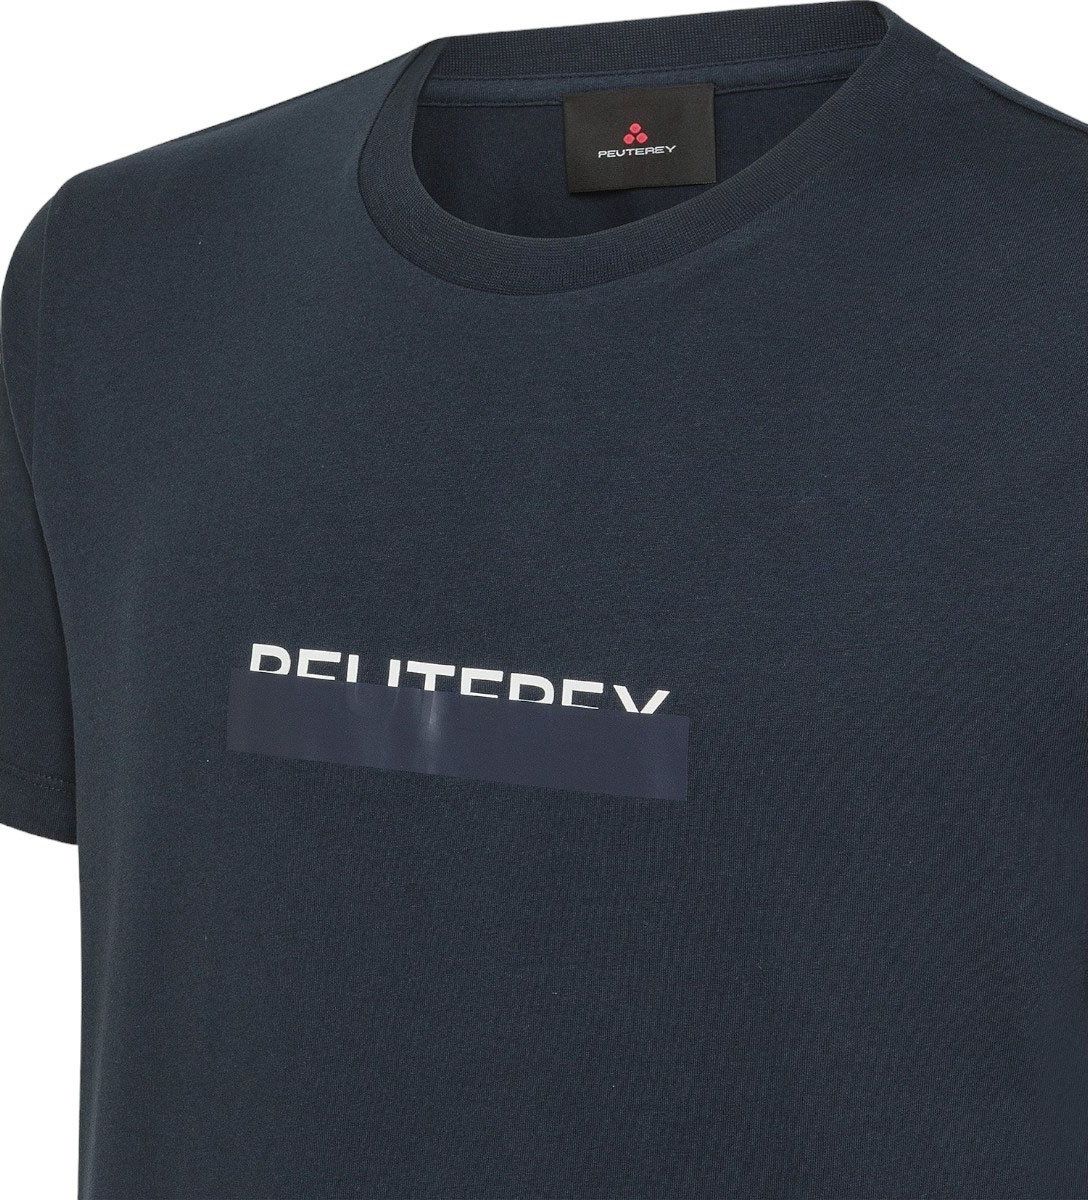 Peuterey Peuterey Heren T-shirt Zwart PEU5136/NER MANDERLY Zwart